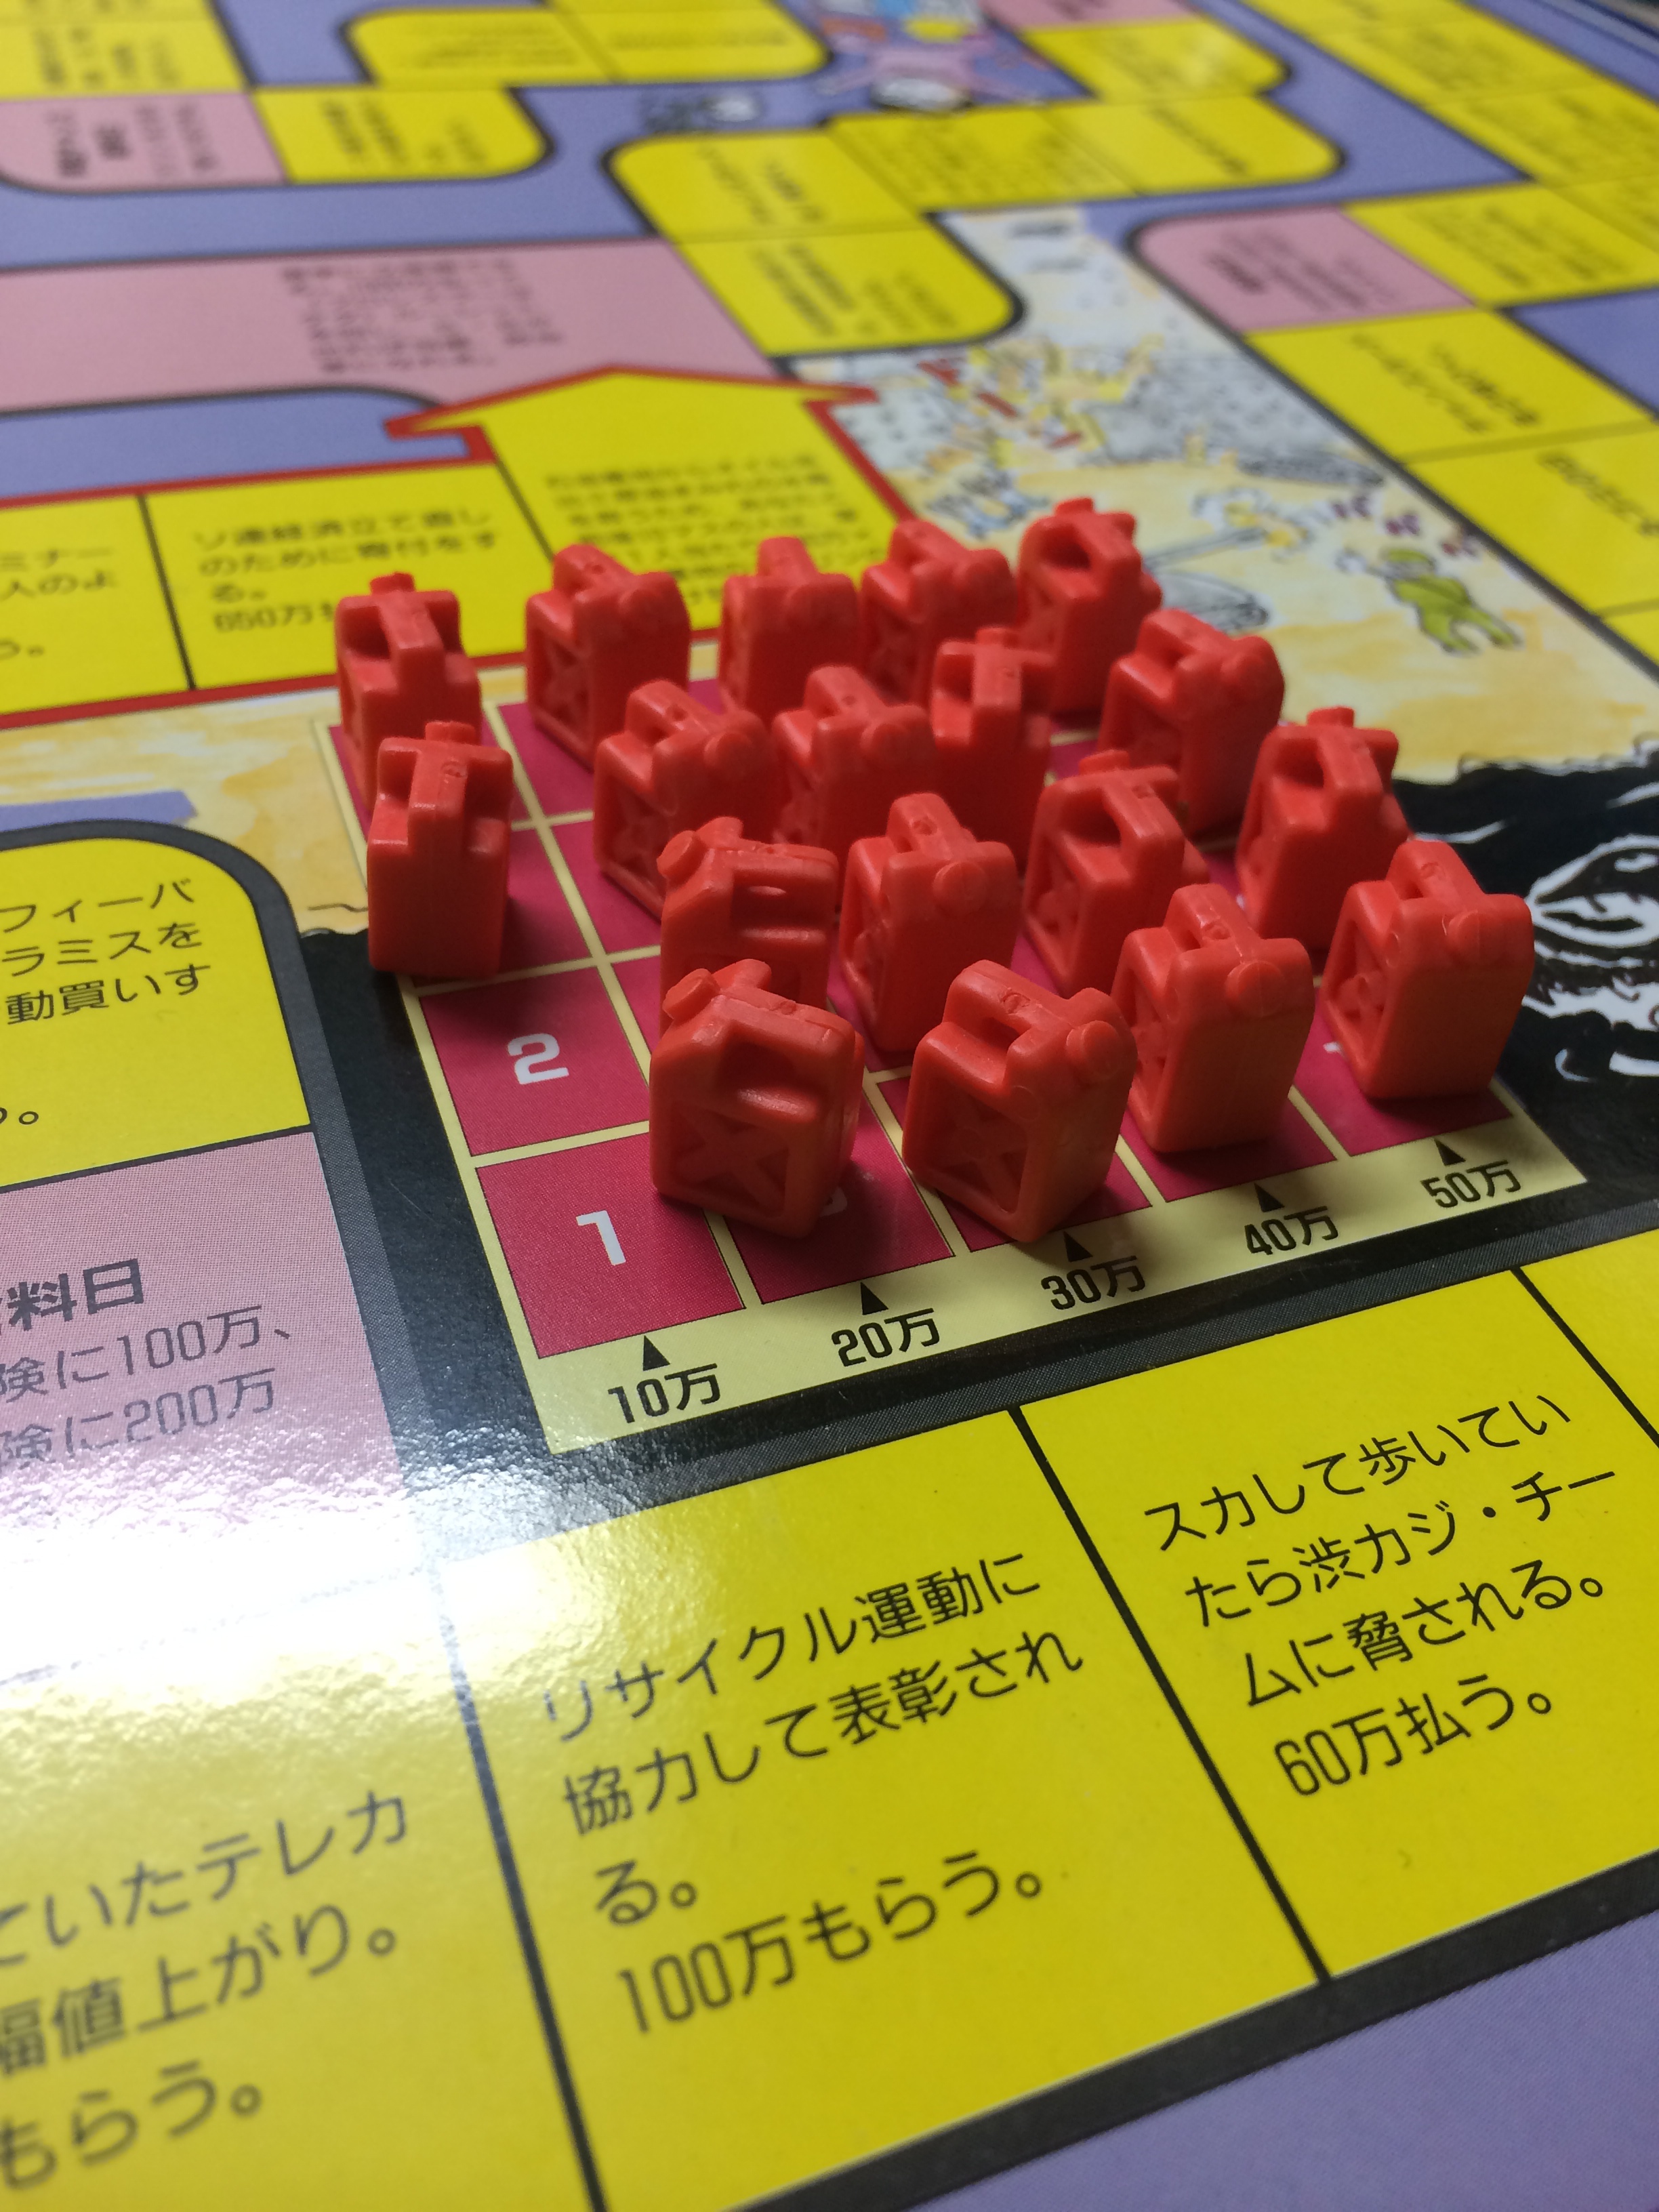 タカラ 人生ゲーム 平成版 III バンゲーム ゴミ問題